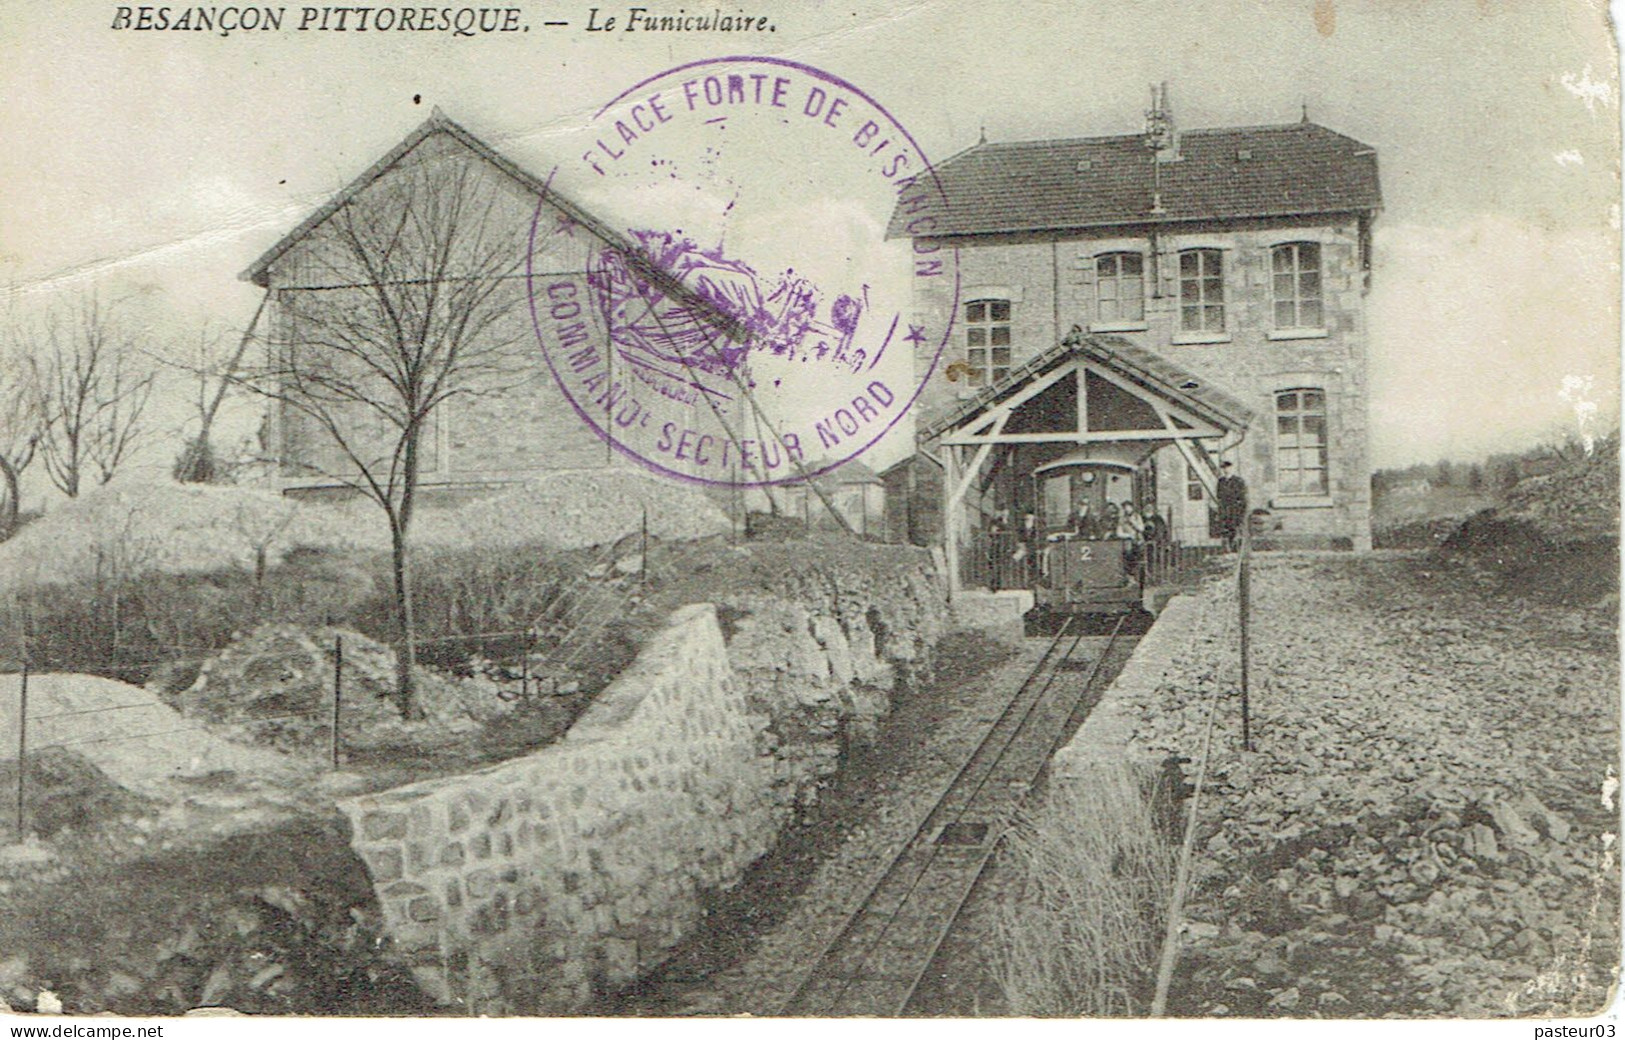 Place Forte De Besançon Commandement Secteur Nord Cachet De Besançon Charrais Du 5-11-1914 Sur CP - Guerre (timbres De)